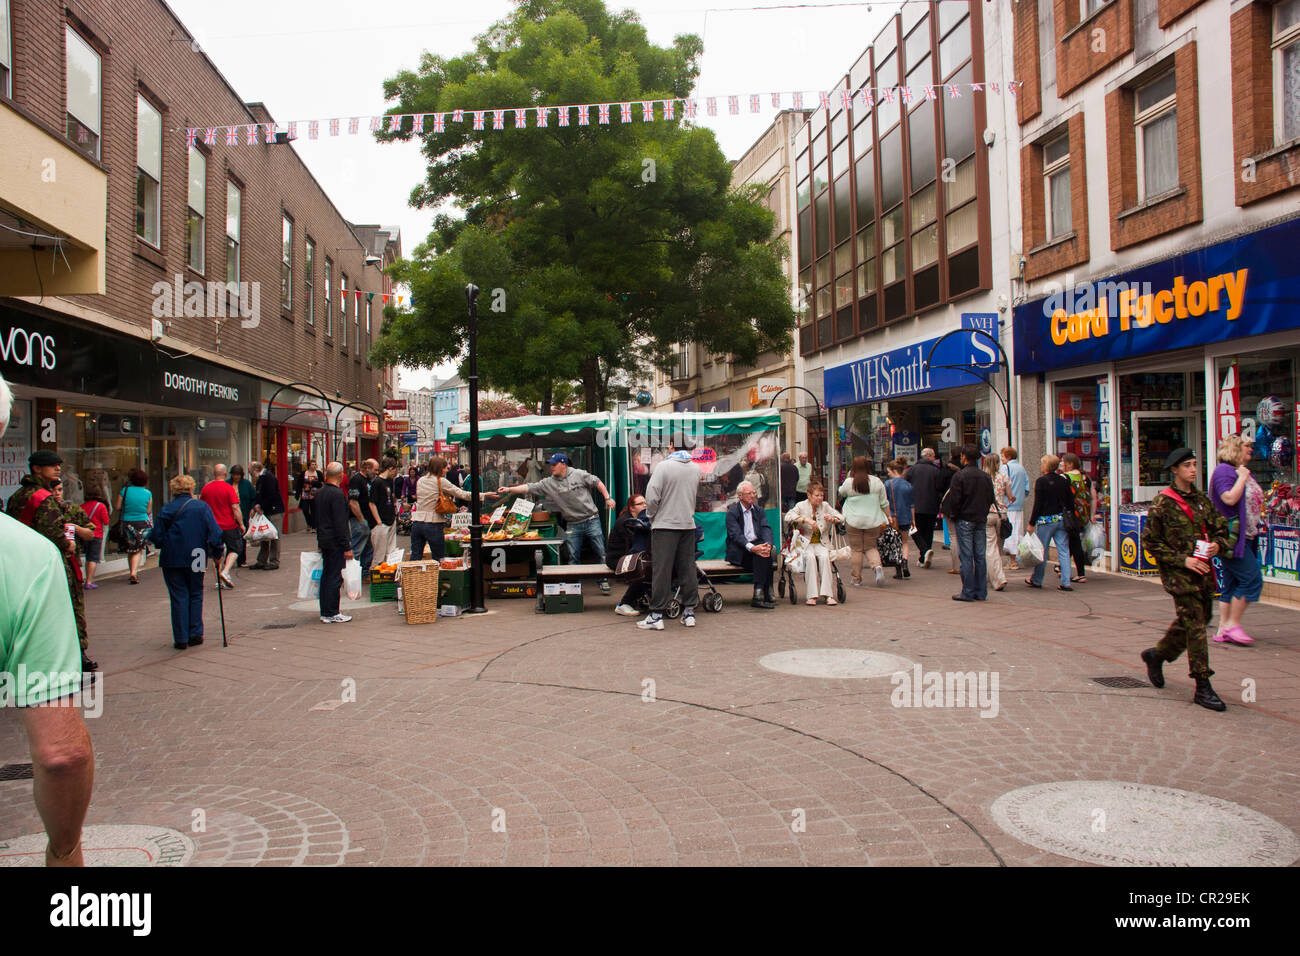 Market stalls in pedestrianized town center of Newton Abbot Devon UK. Stock Photo